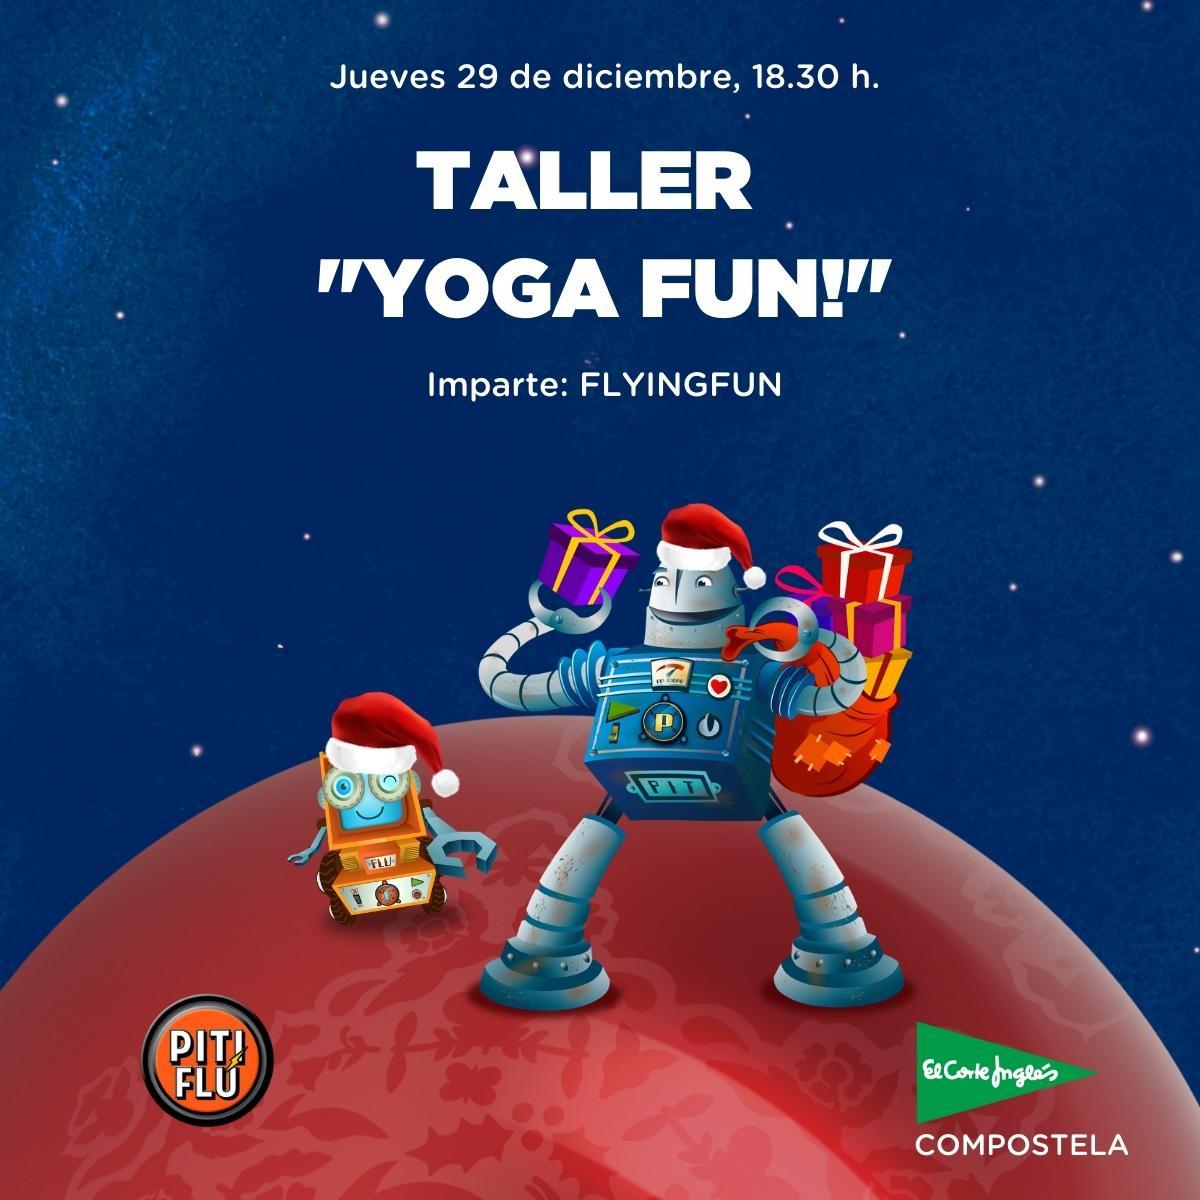 Taller Yoga fun!  FLYINGFUN